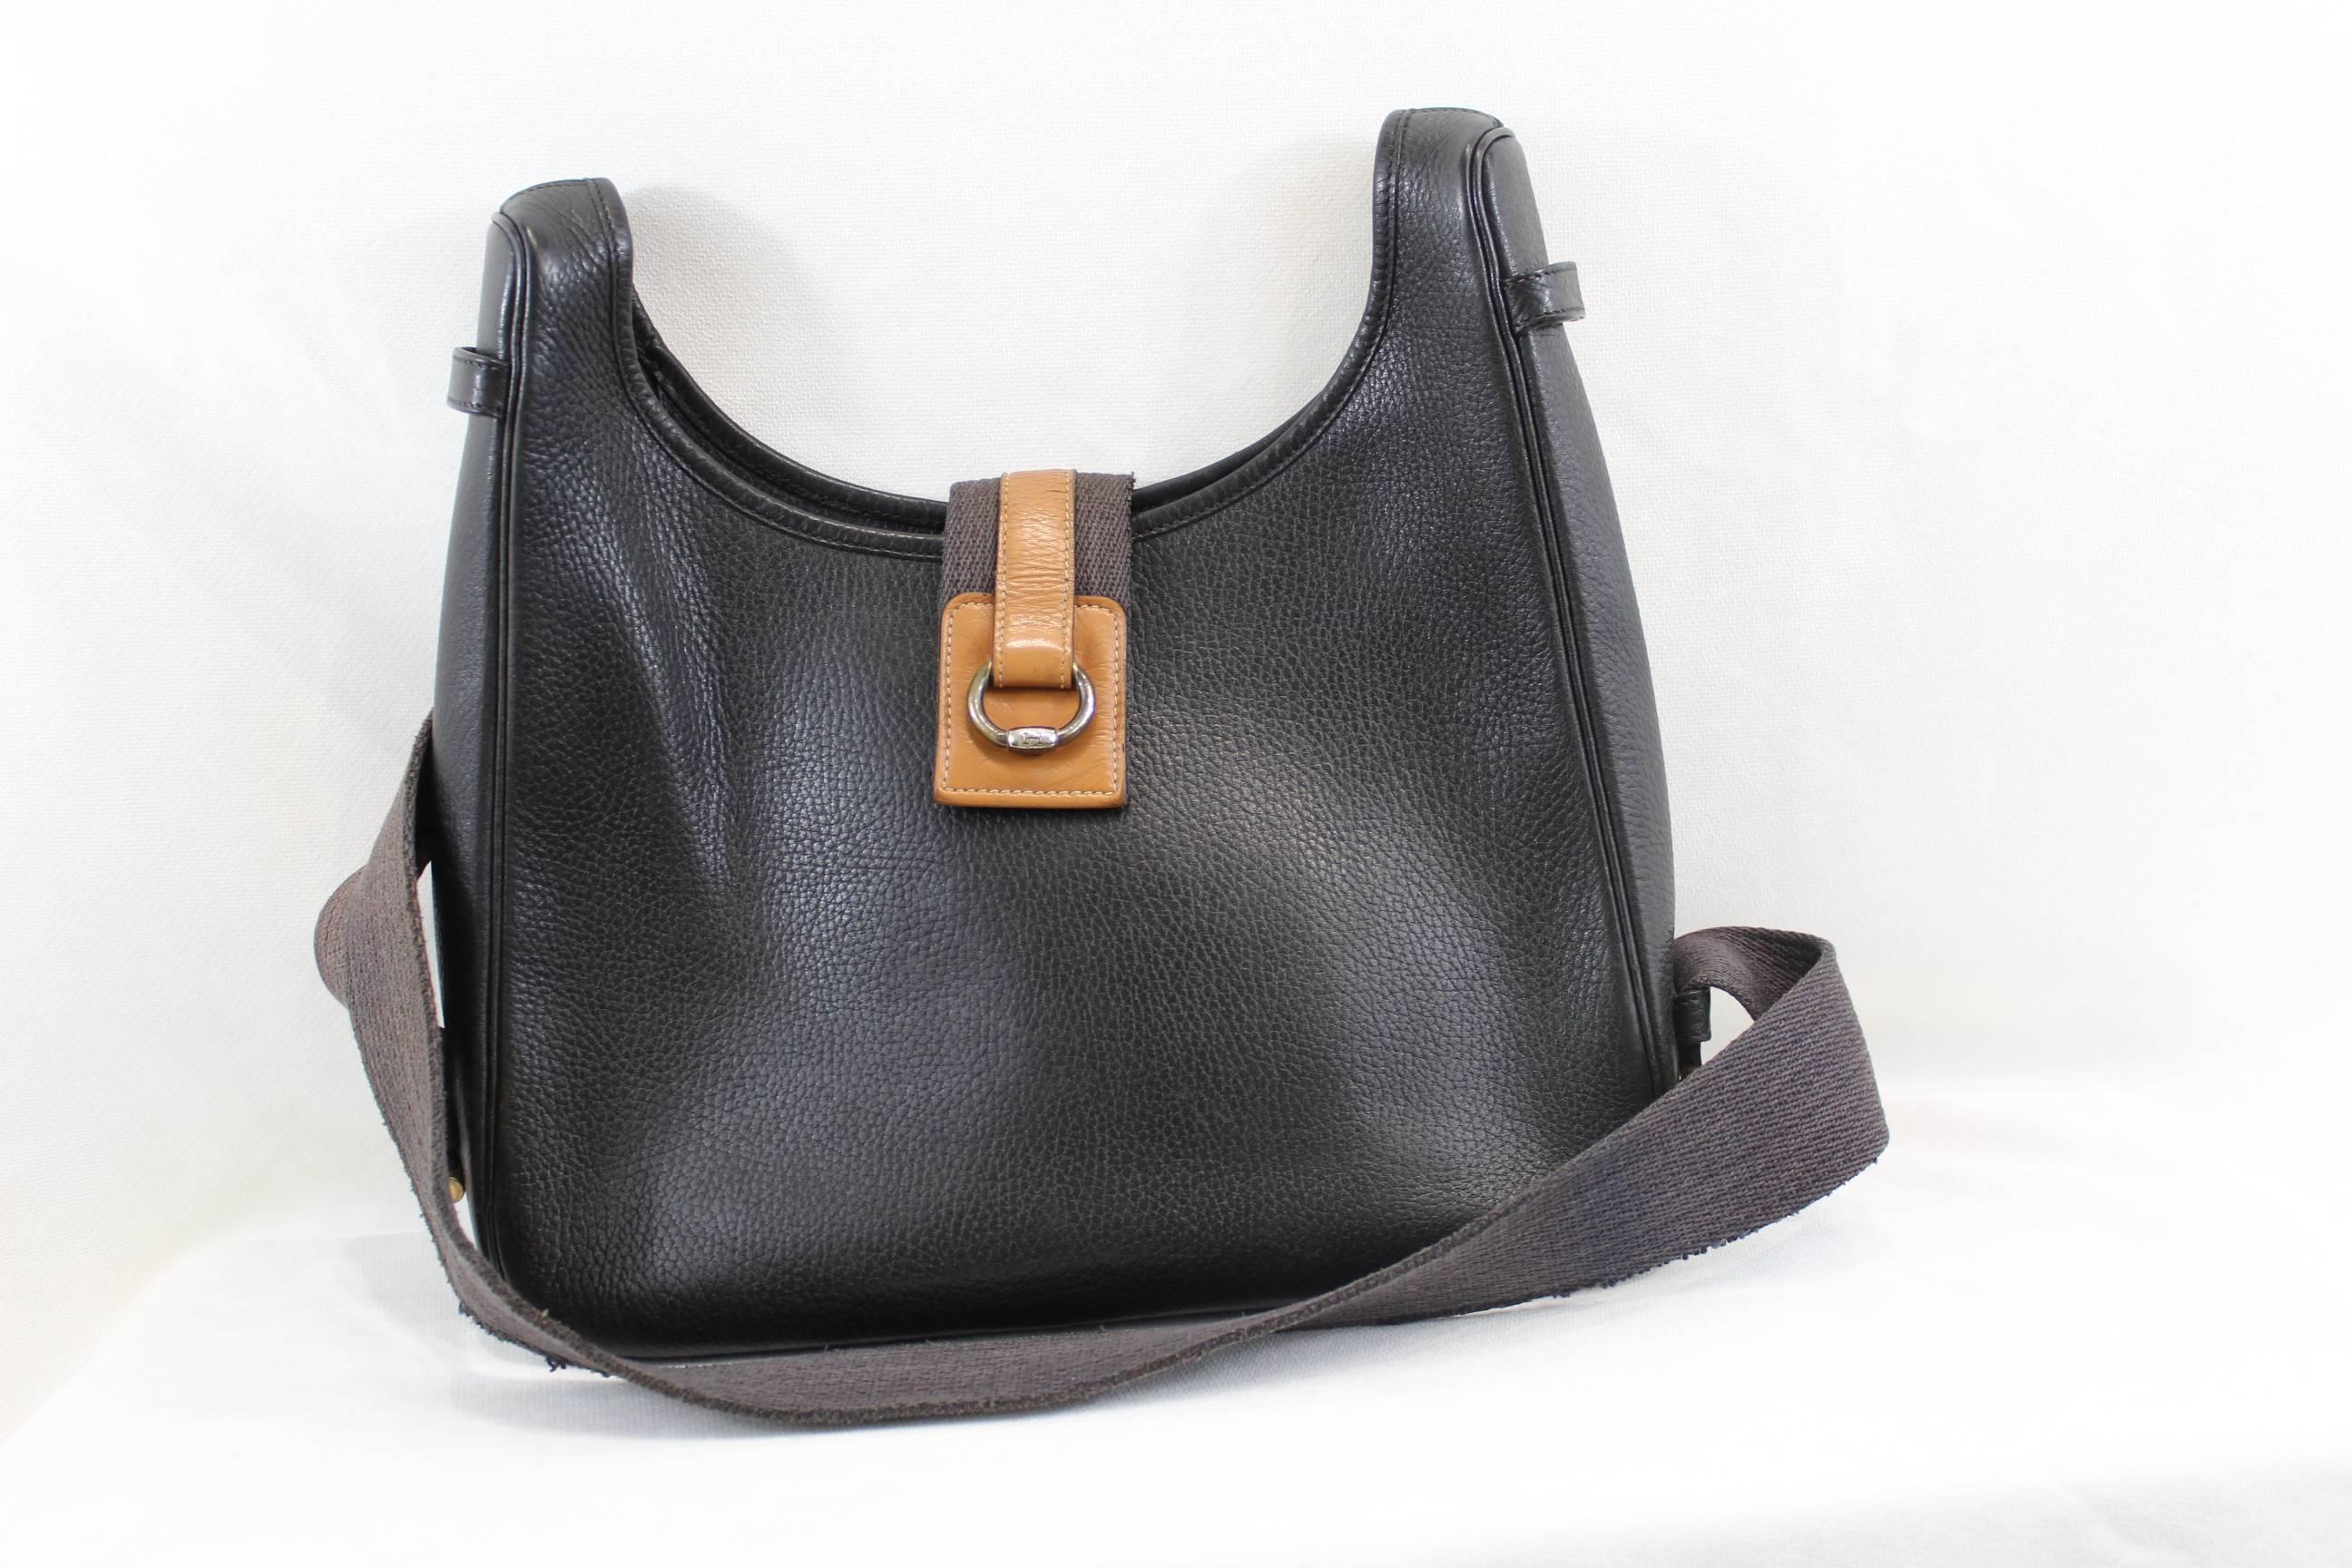 Women's Vintage Tsako Hermes Bag in Grained Togo Leather. 1986 (marked P)  